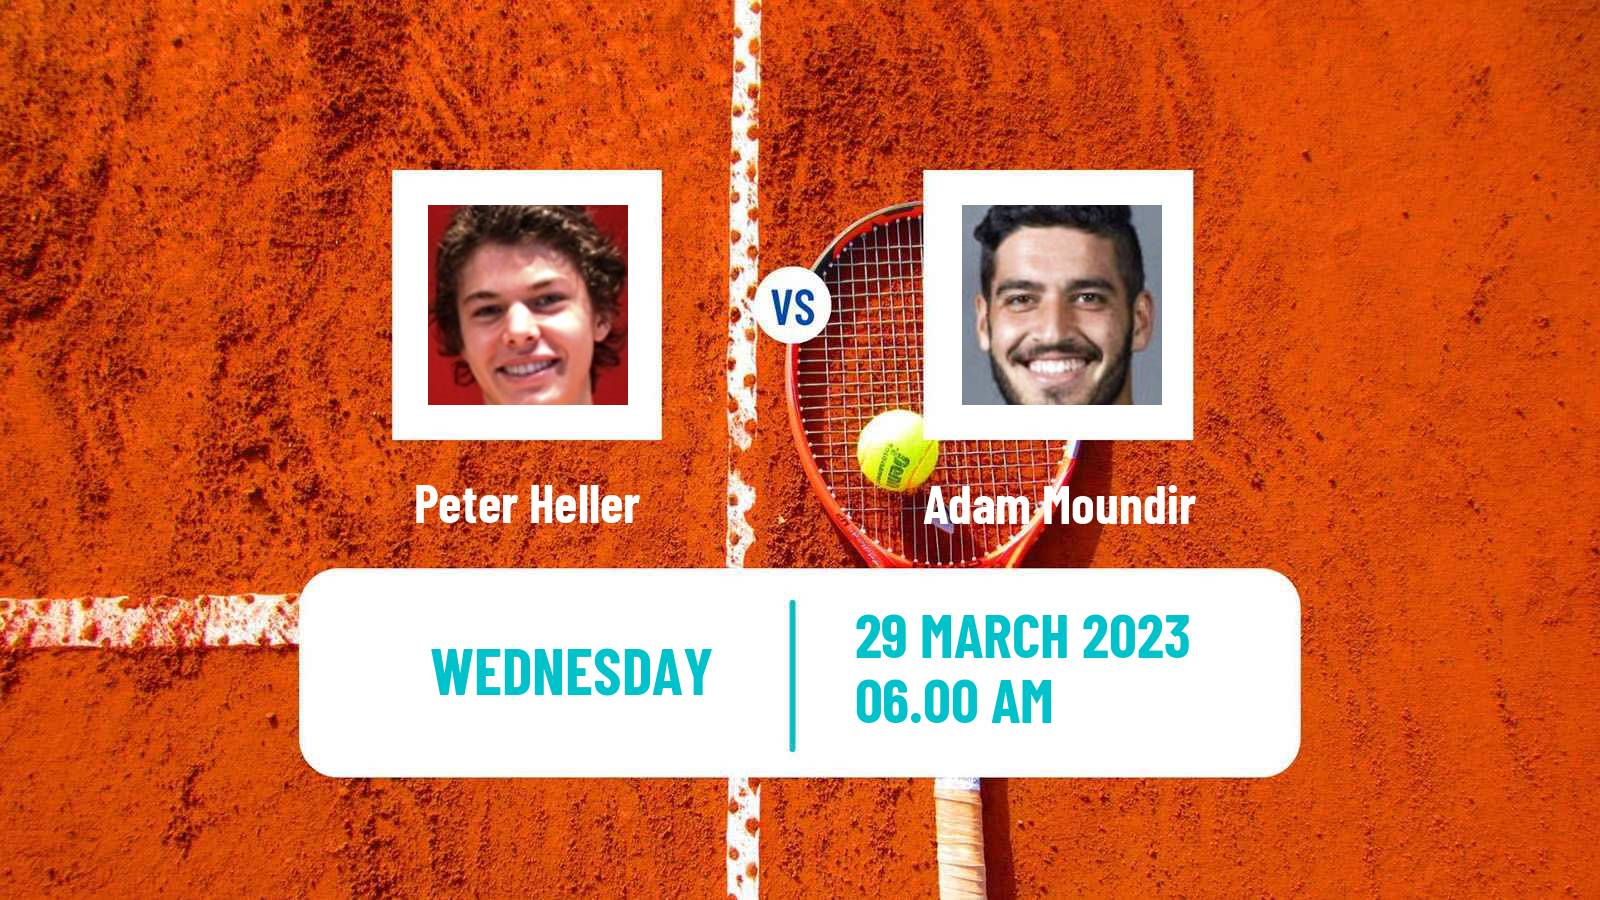 Tennis ITF Tournaments Peter Heller - Adam Moundir